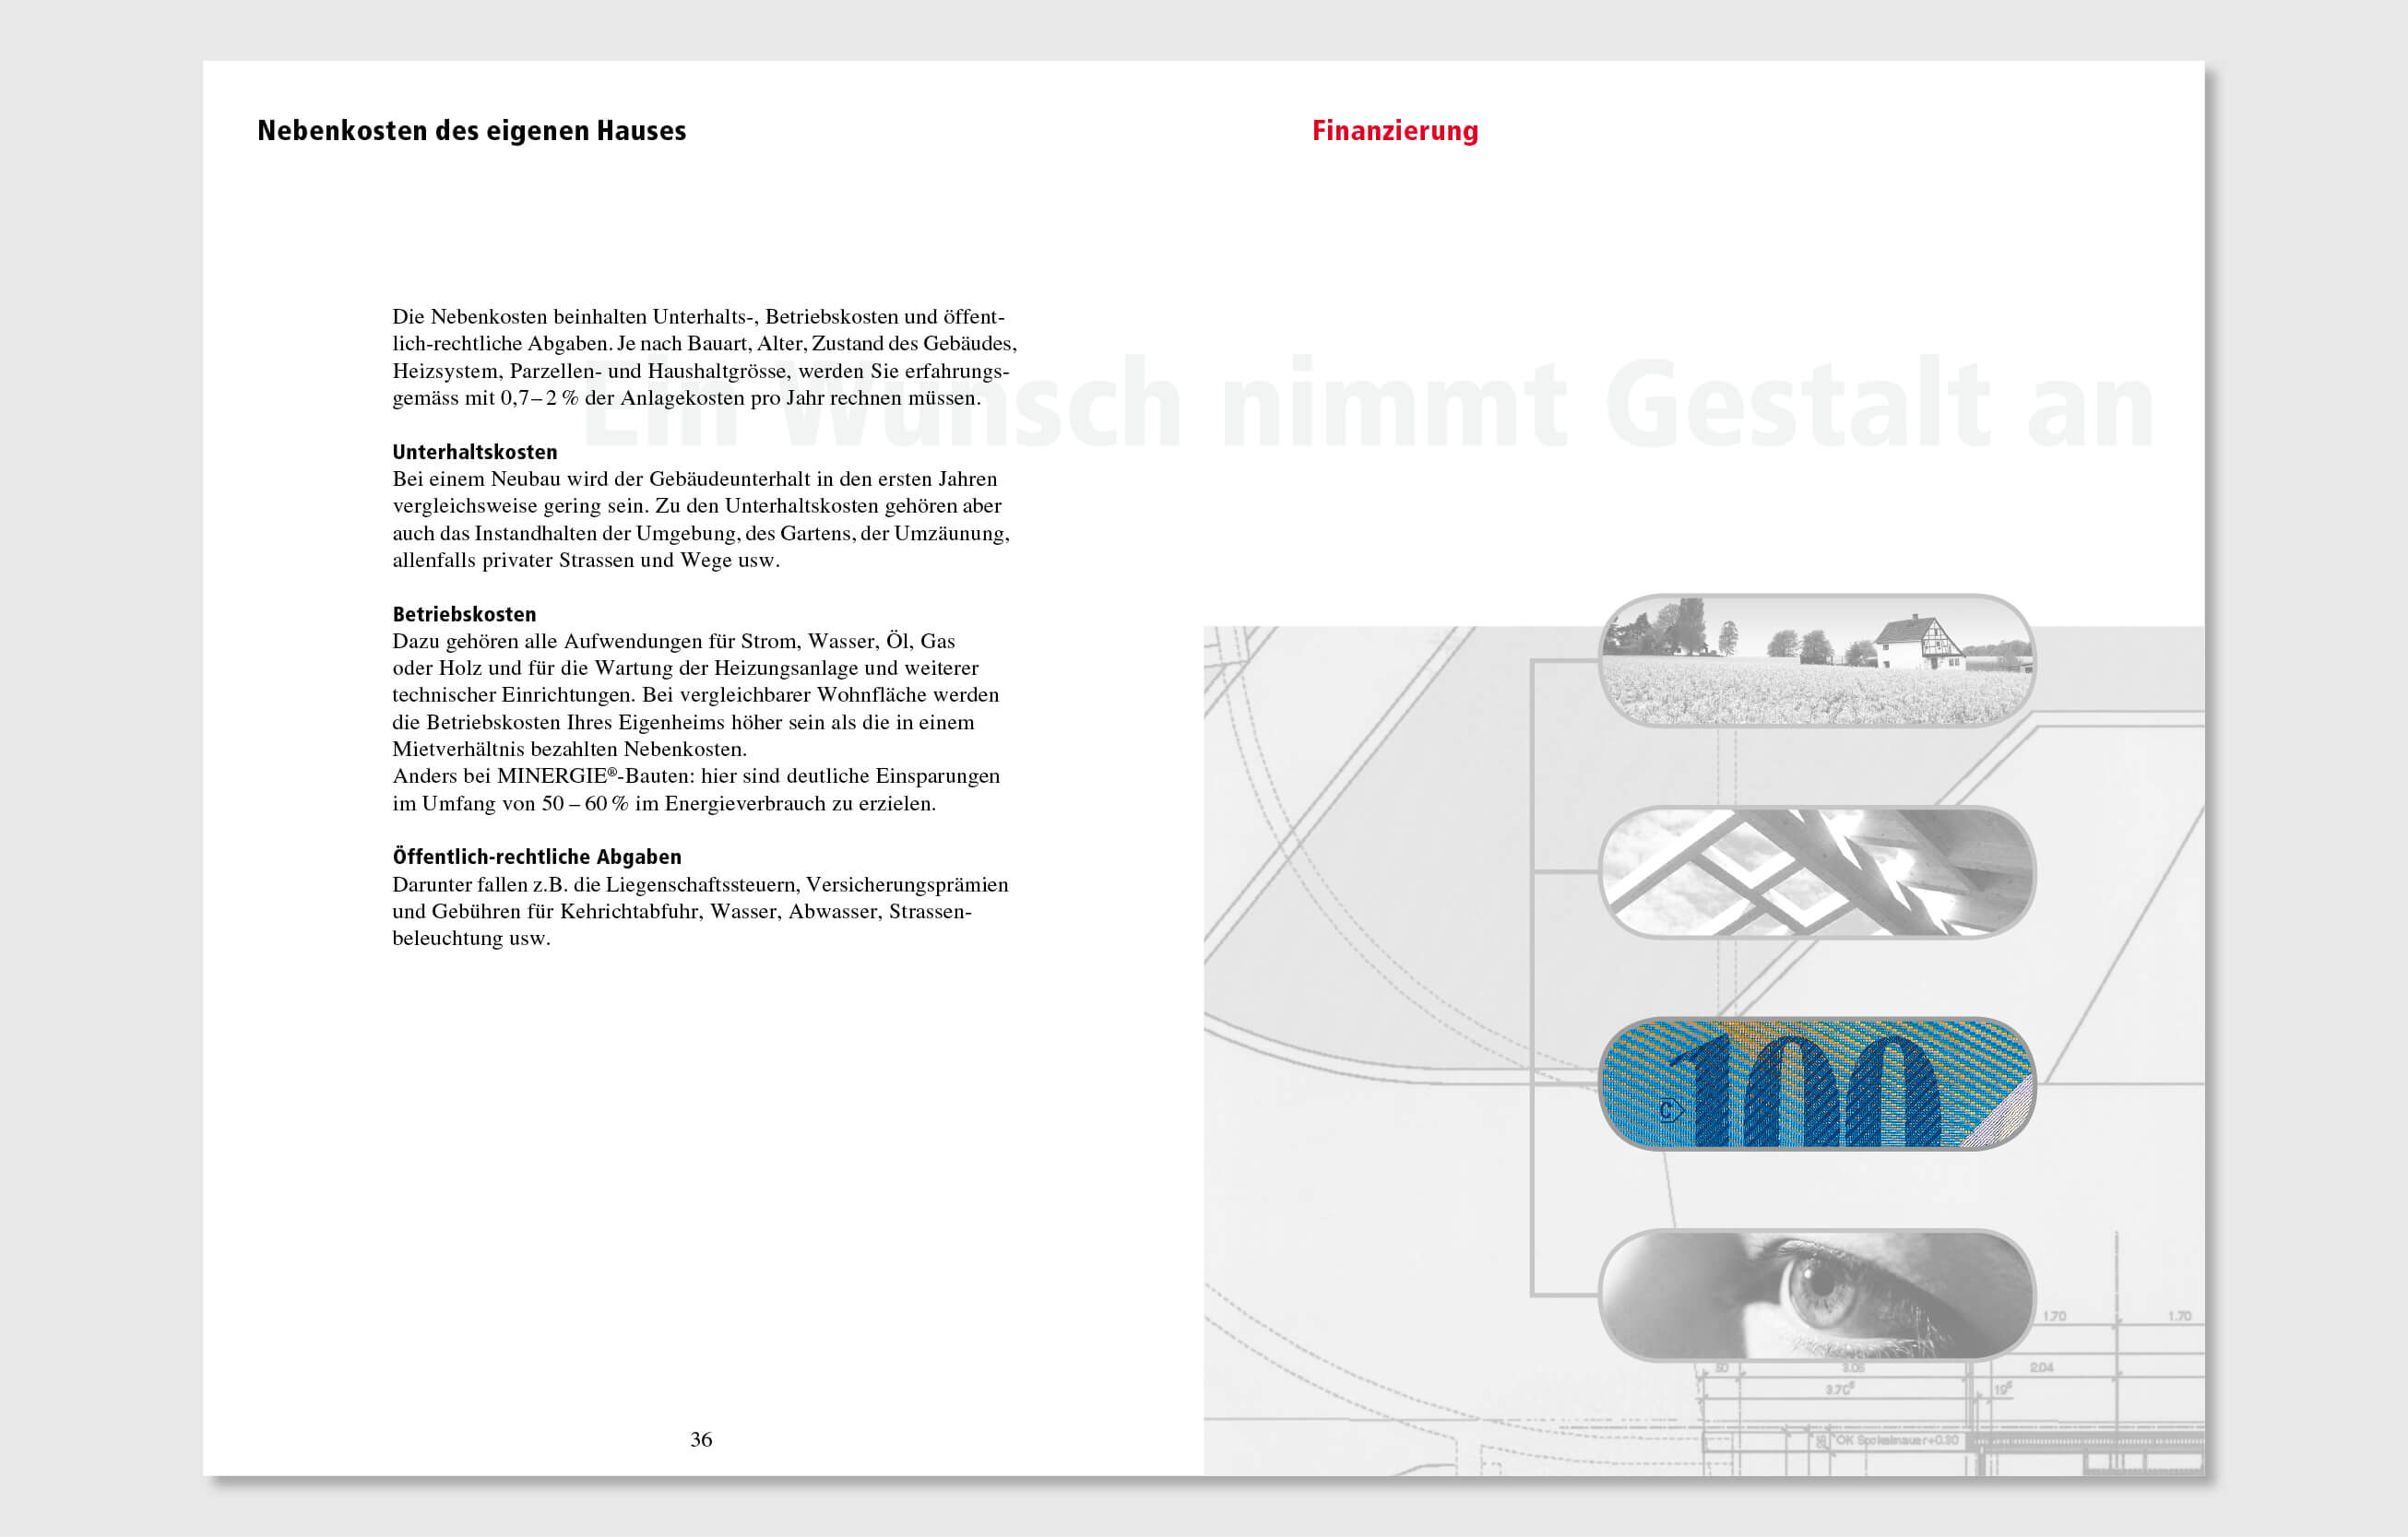 bekb design by consign | Agentur für Branding und Kommunikation